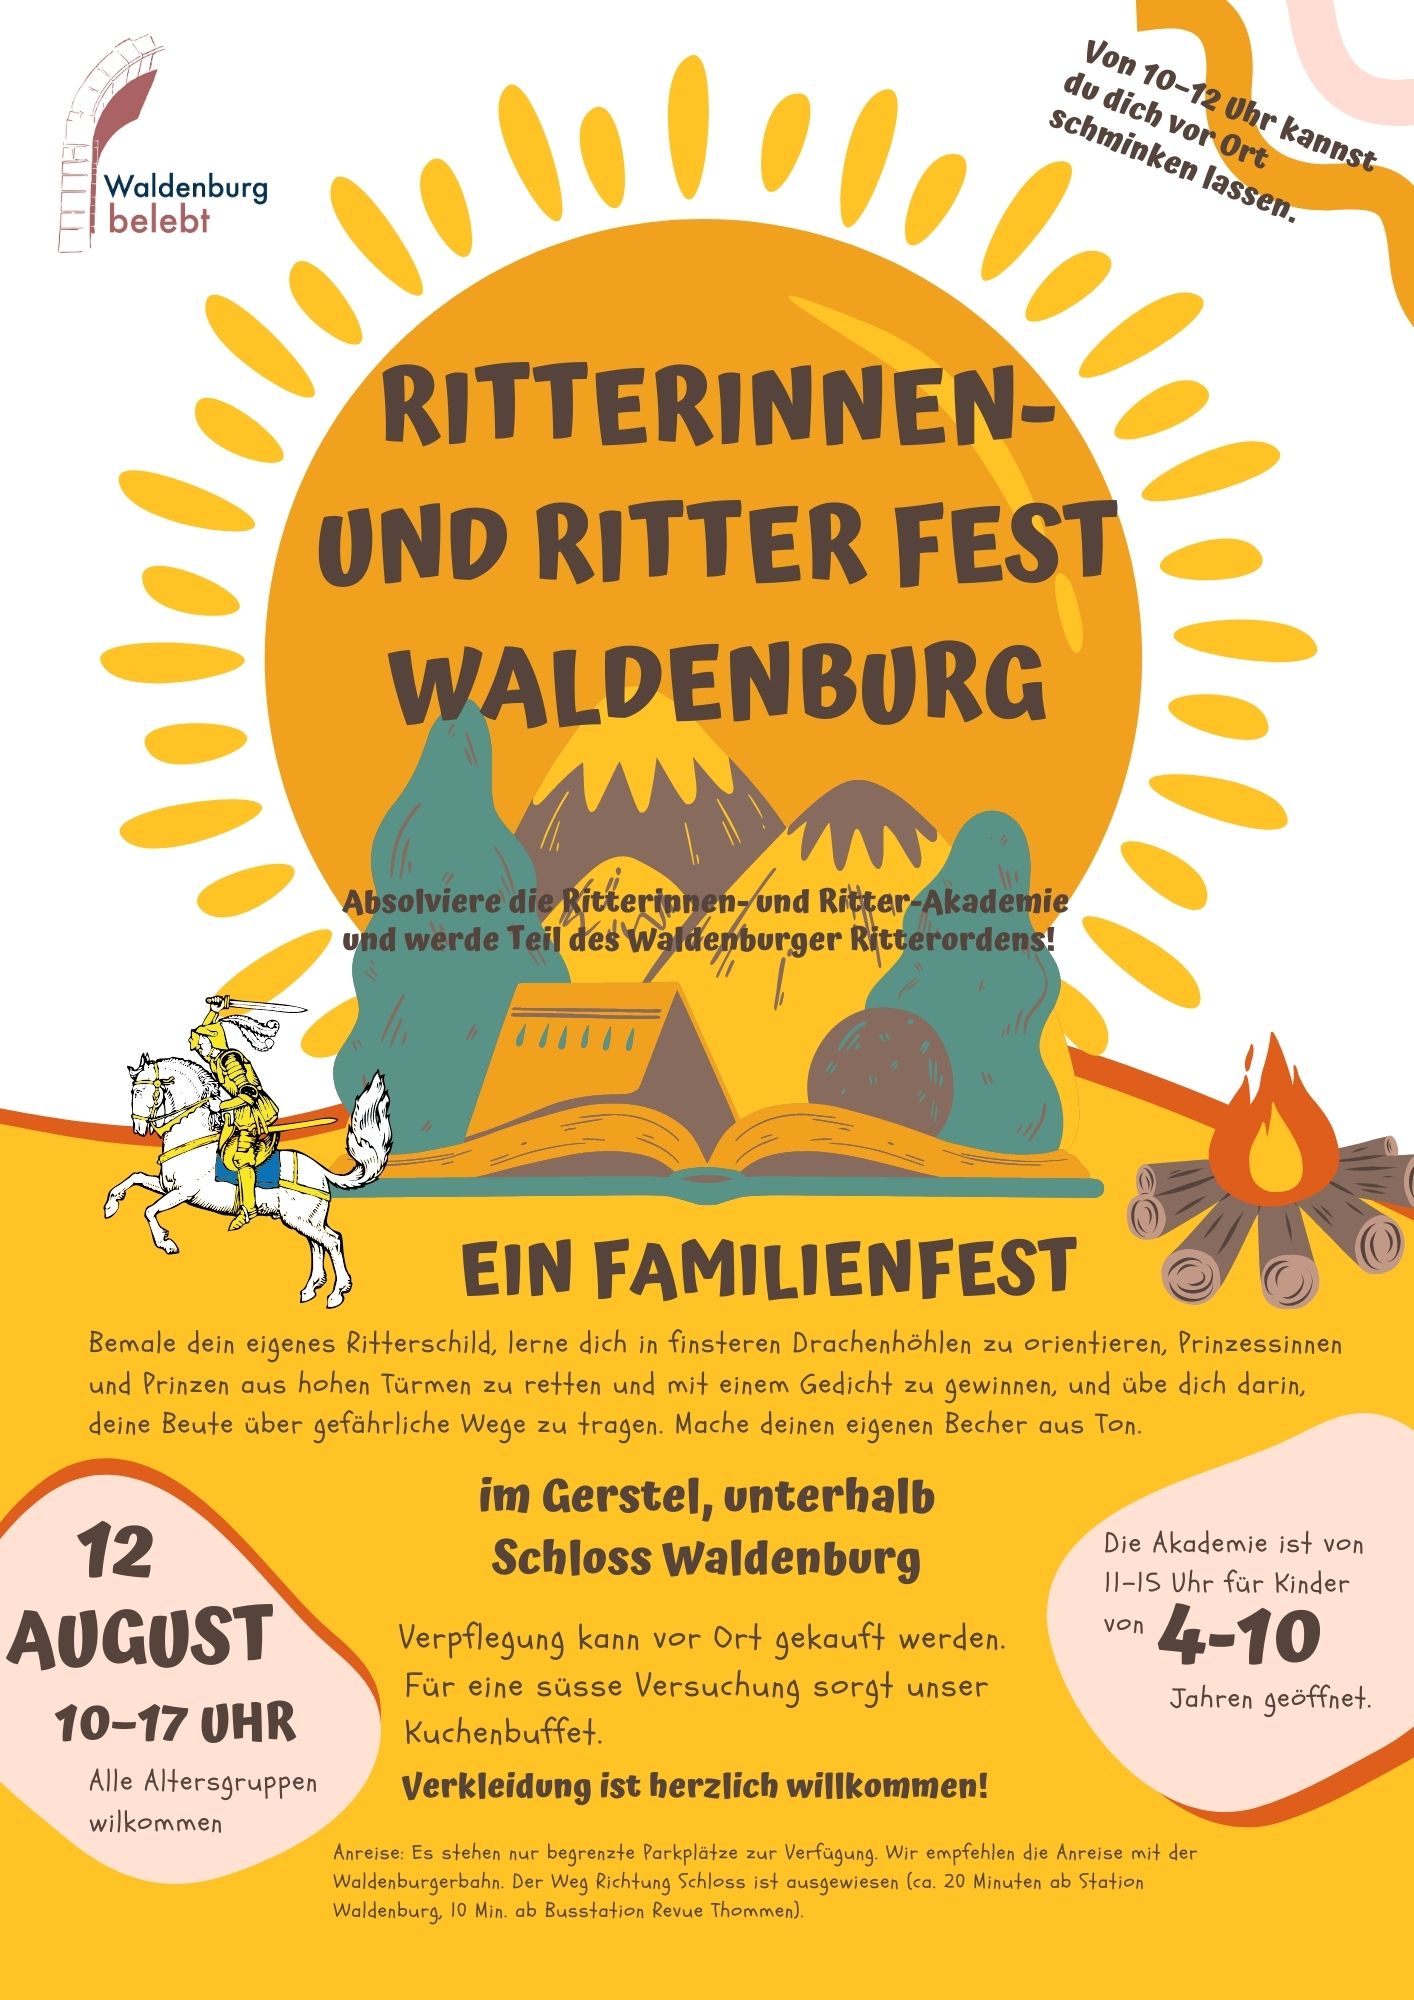 Ritterinnen-und-Ritter-Akademie-Waldenburg